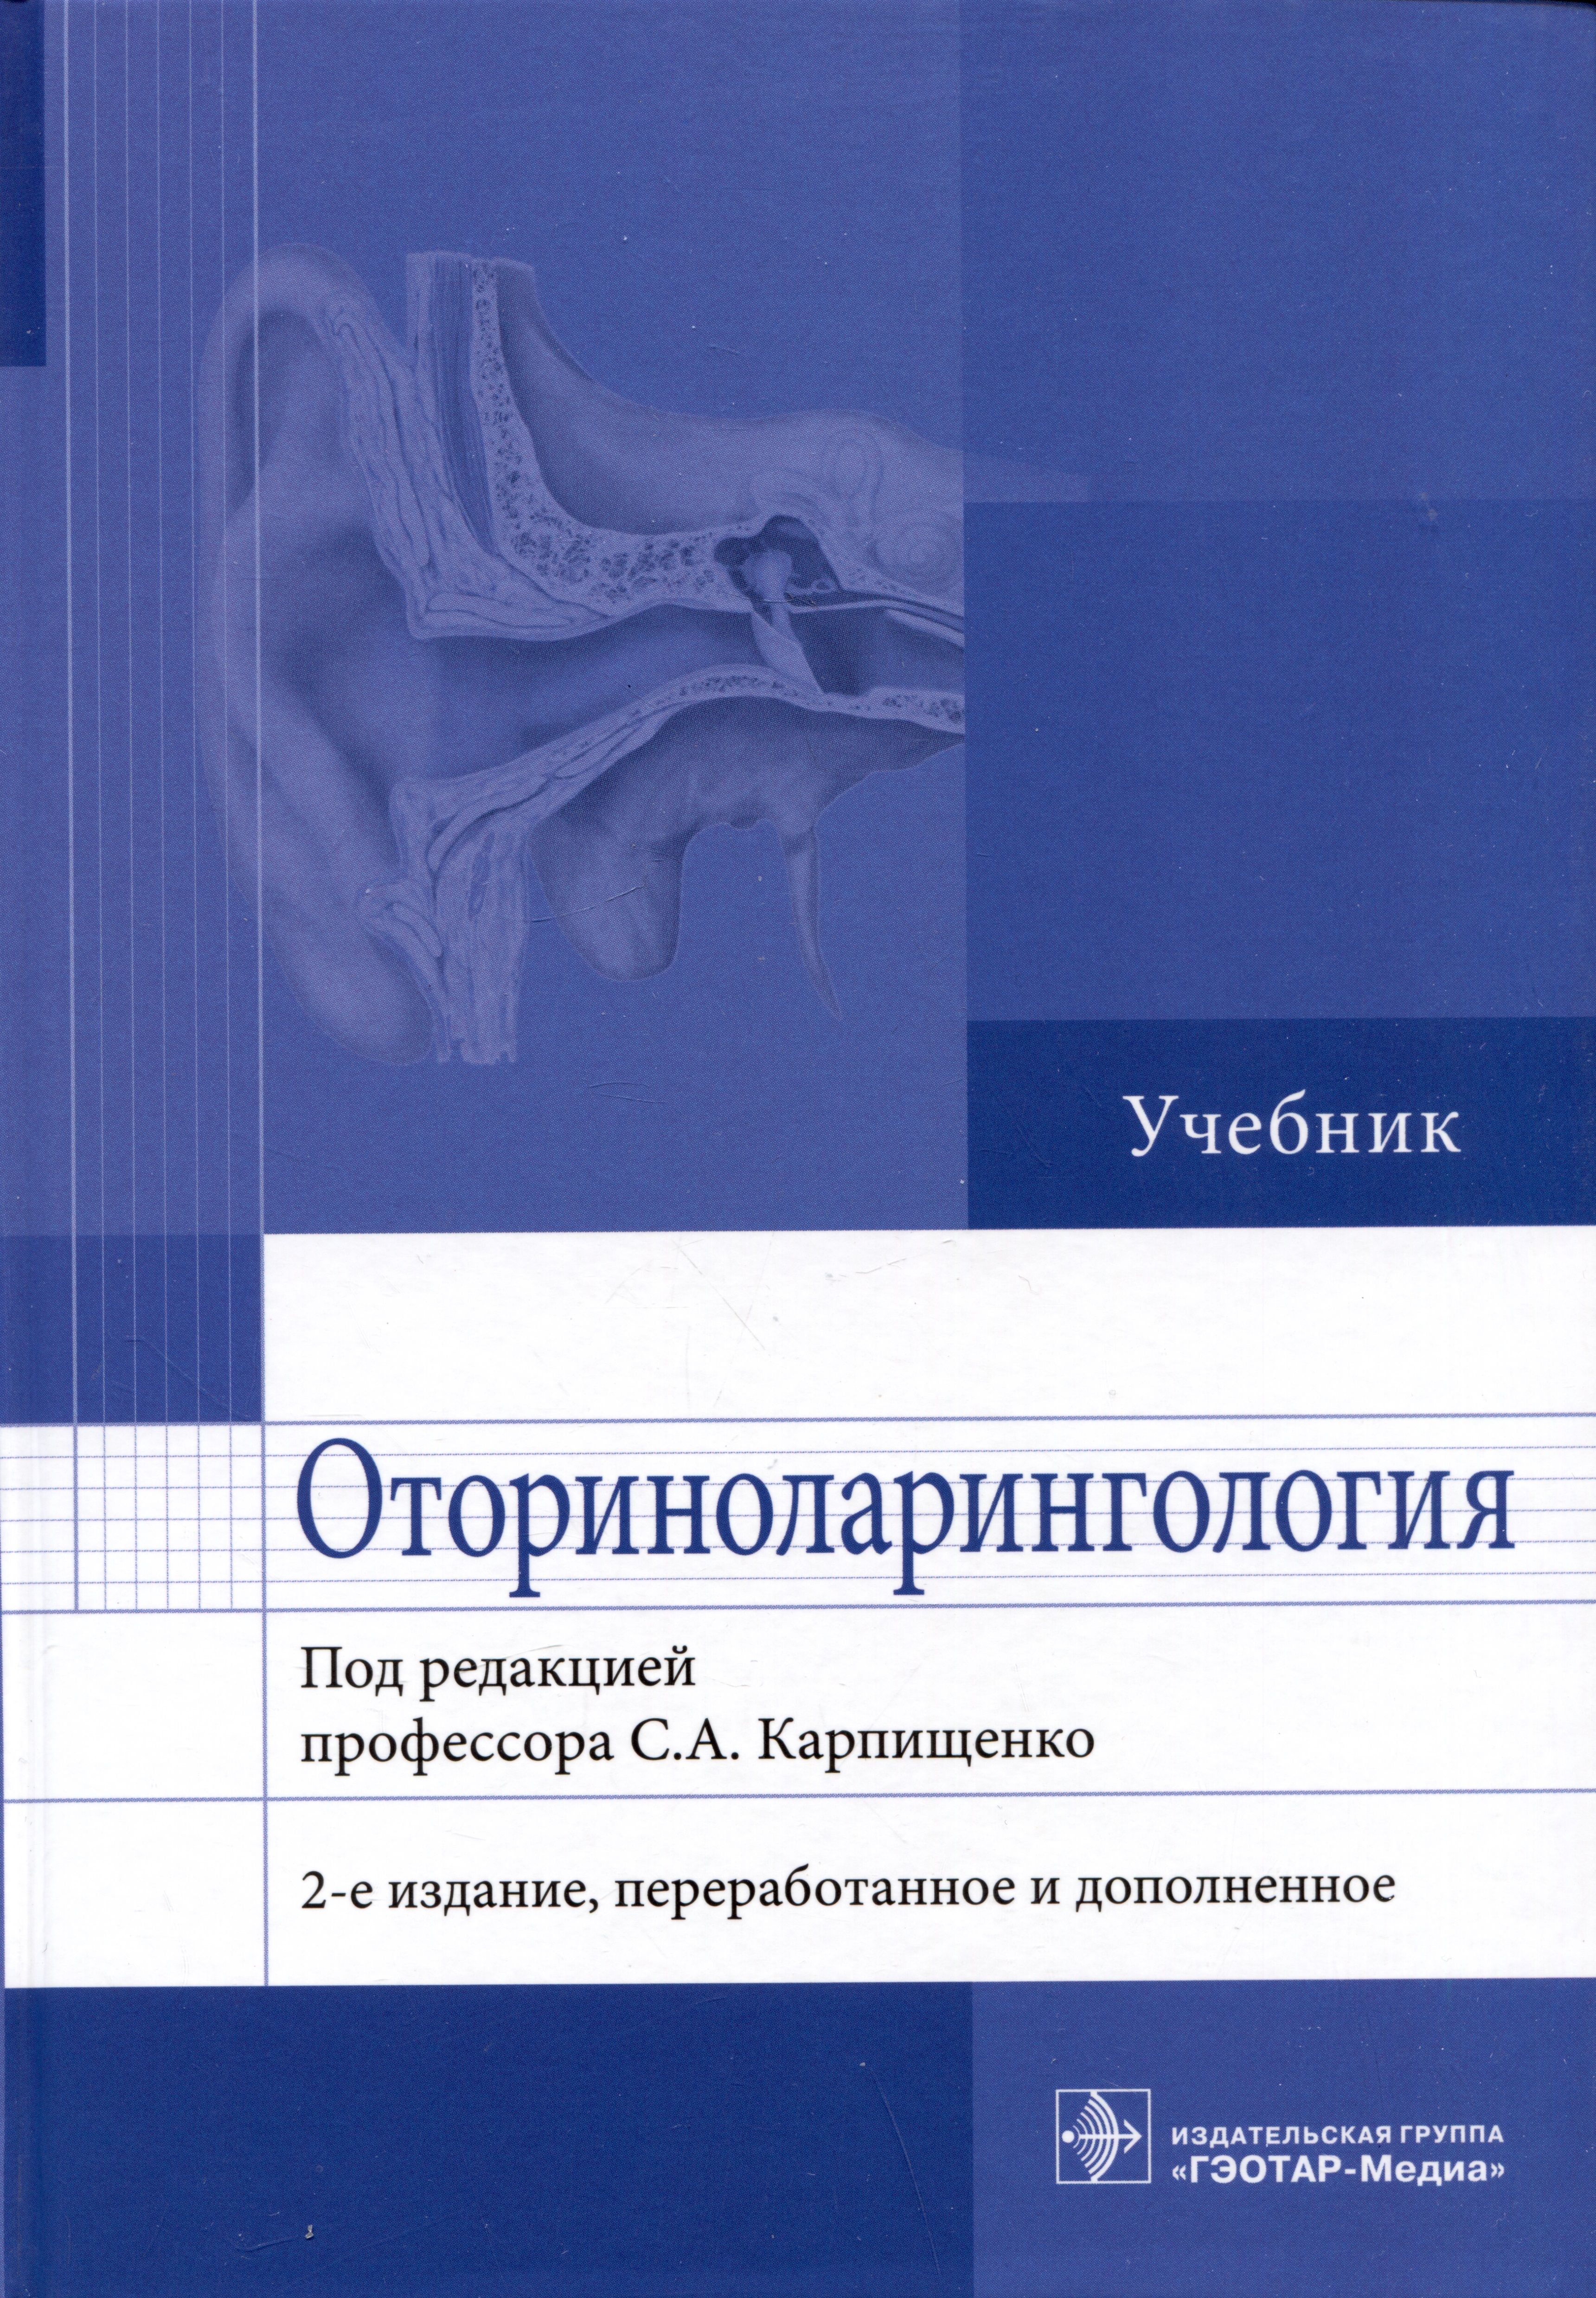  - Оториноларингология: учебник